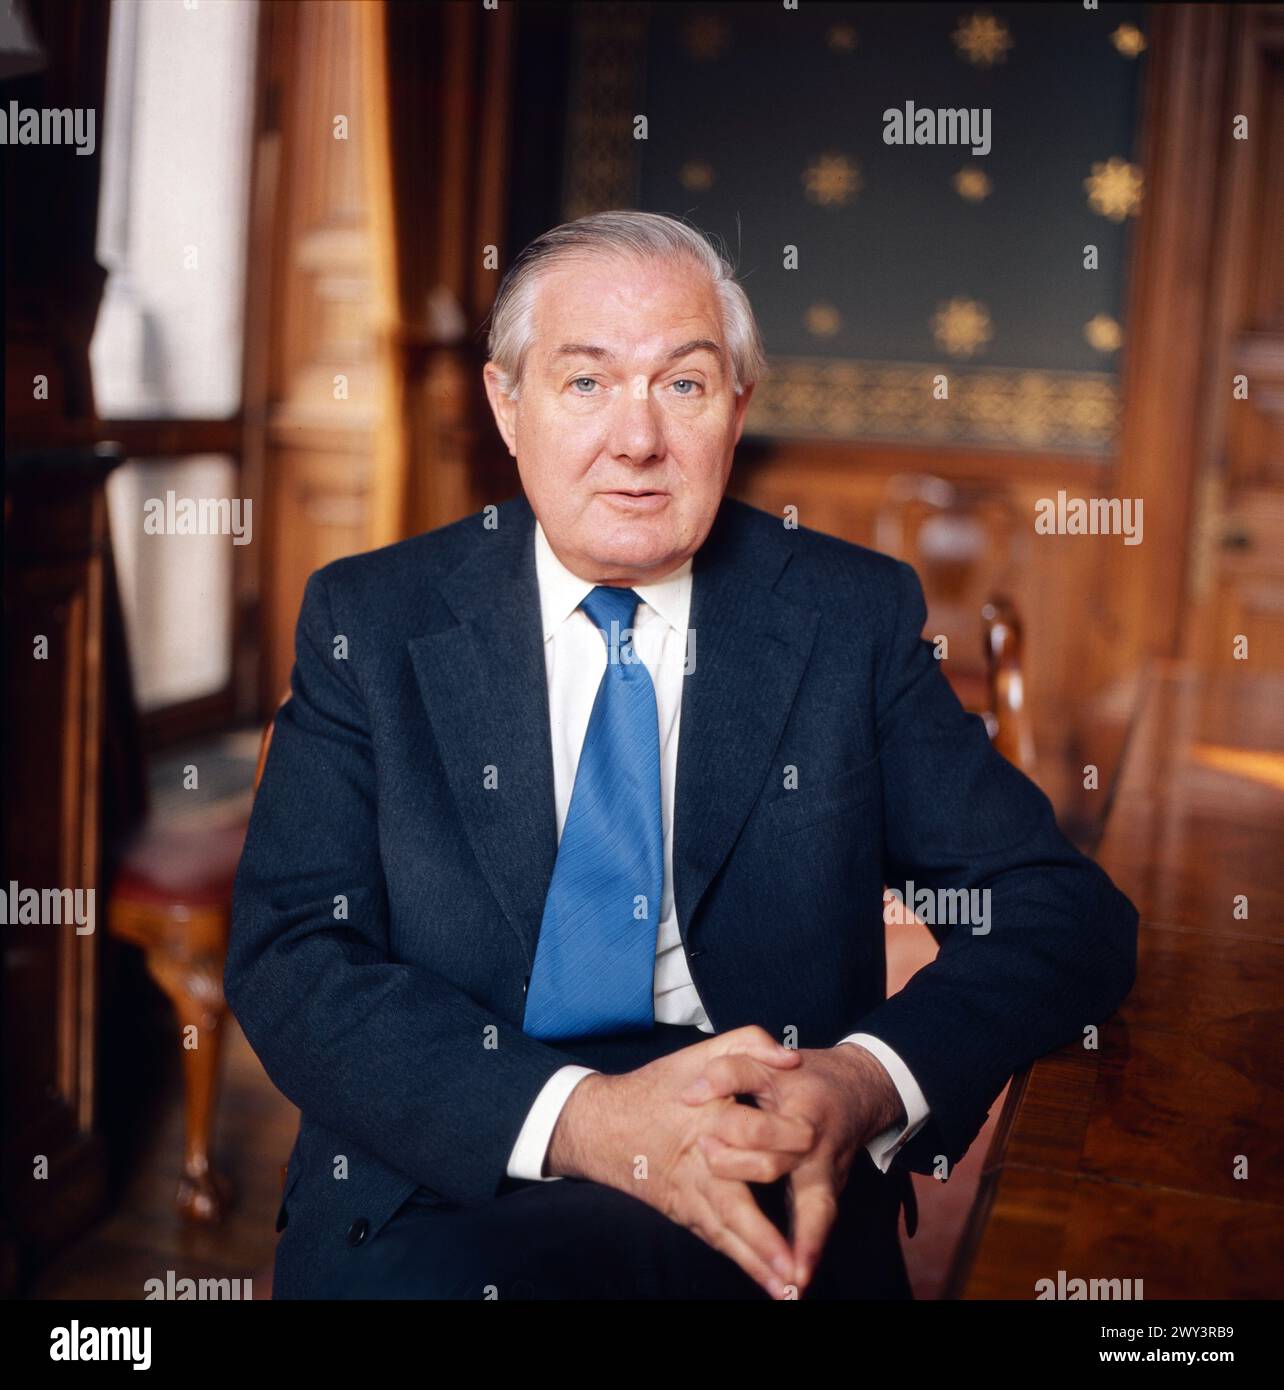 Die britische alternative, Beobachtungen zum Wahlkampf in Großbritannien, Dokumentation, Deutschland 1978, assunto: Premier James Callaghan Foto Stock